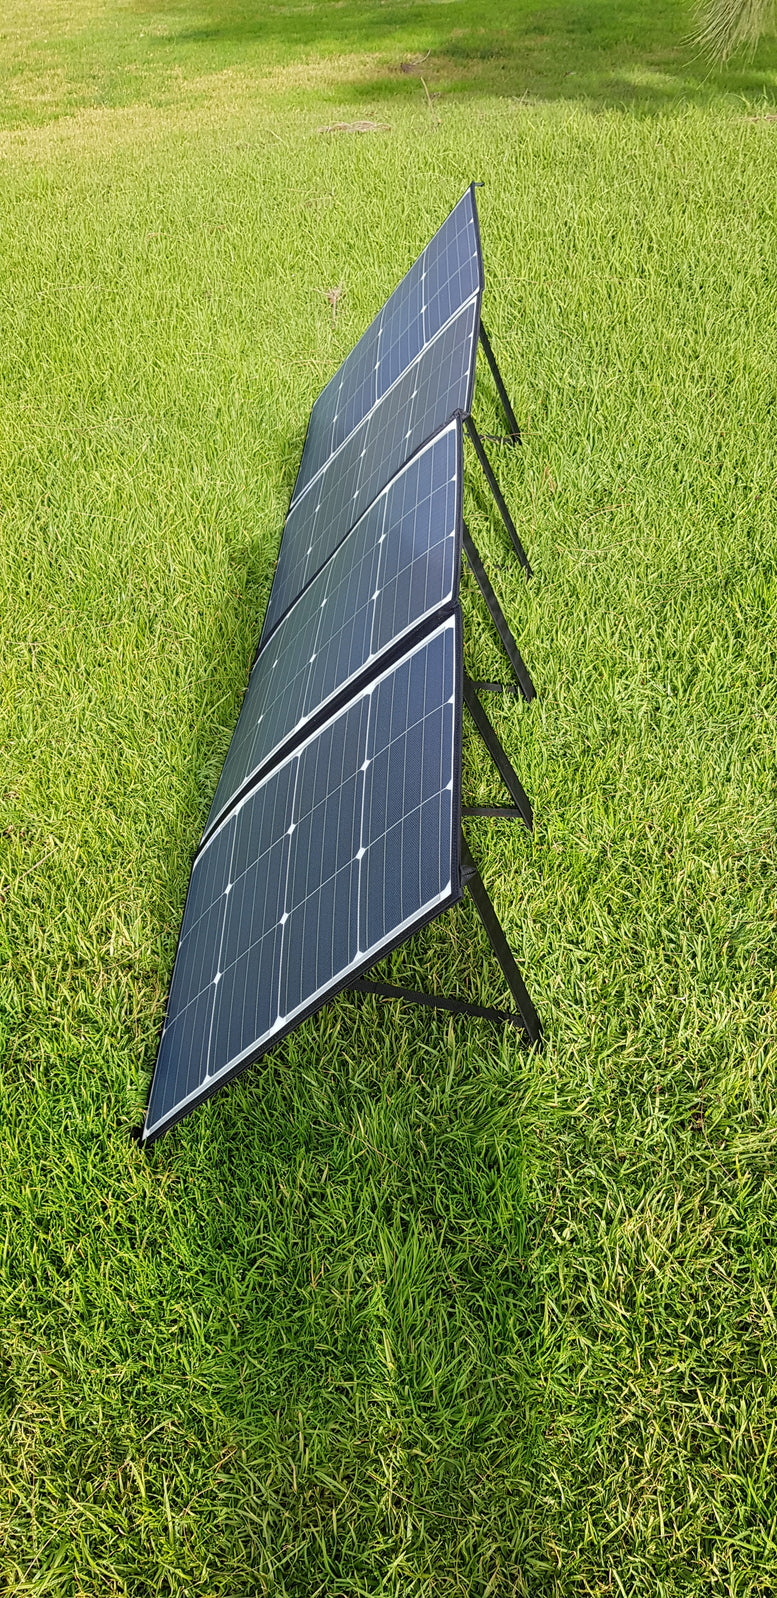 Sunman eArc 235W Portable Solar Blanket - 5 Year Warranty and Only 7kg! | Sunman eARC Solar Panels